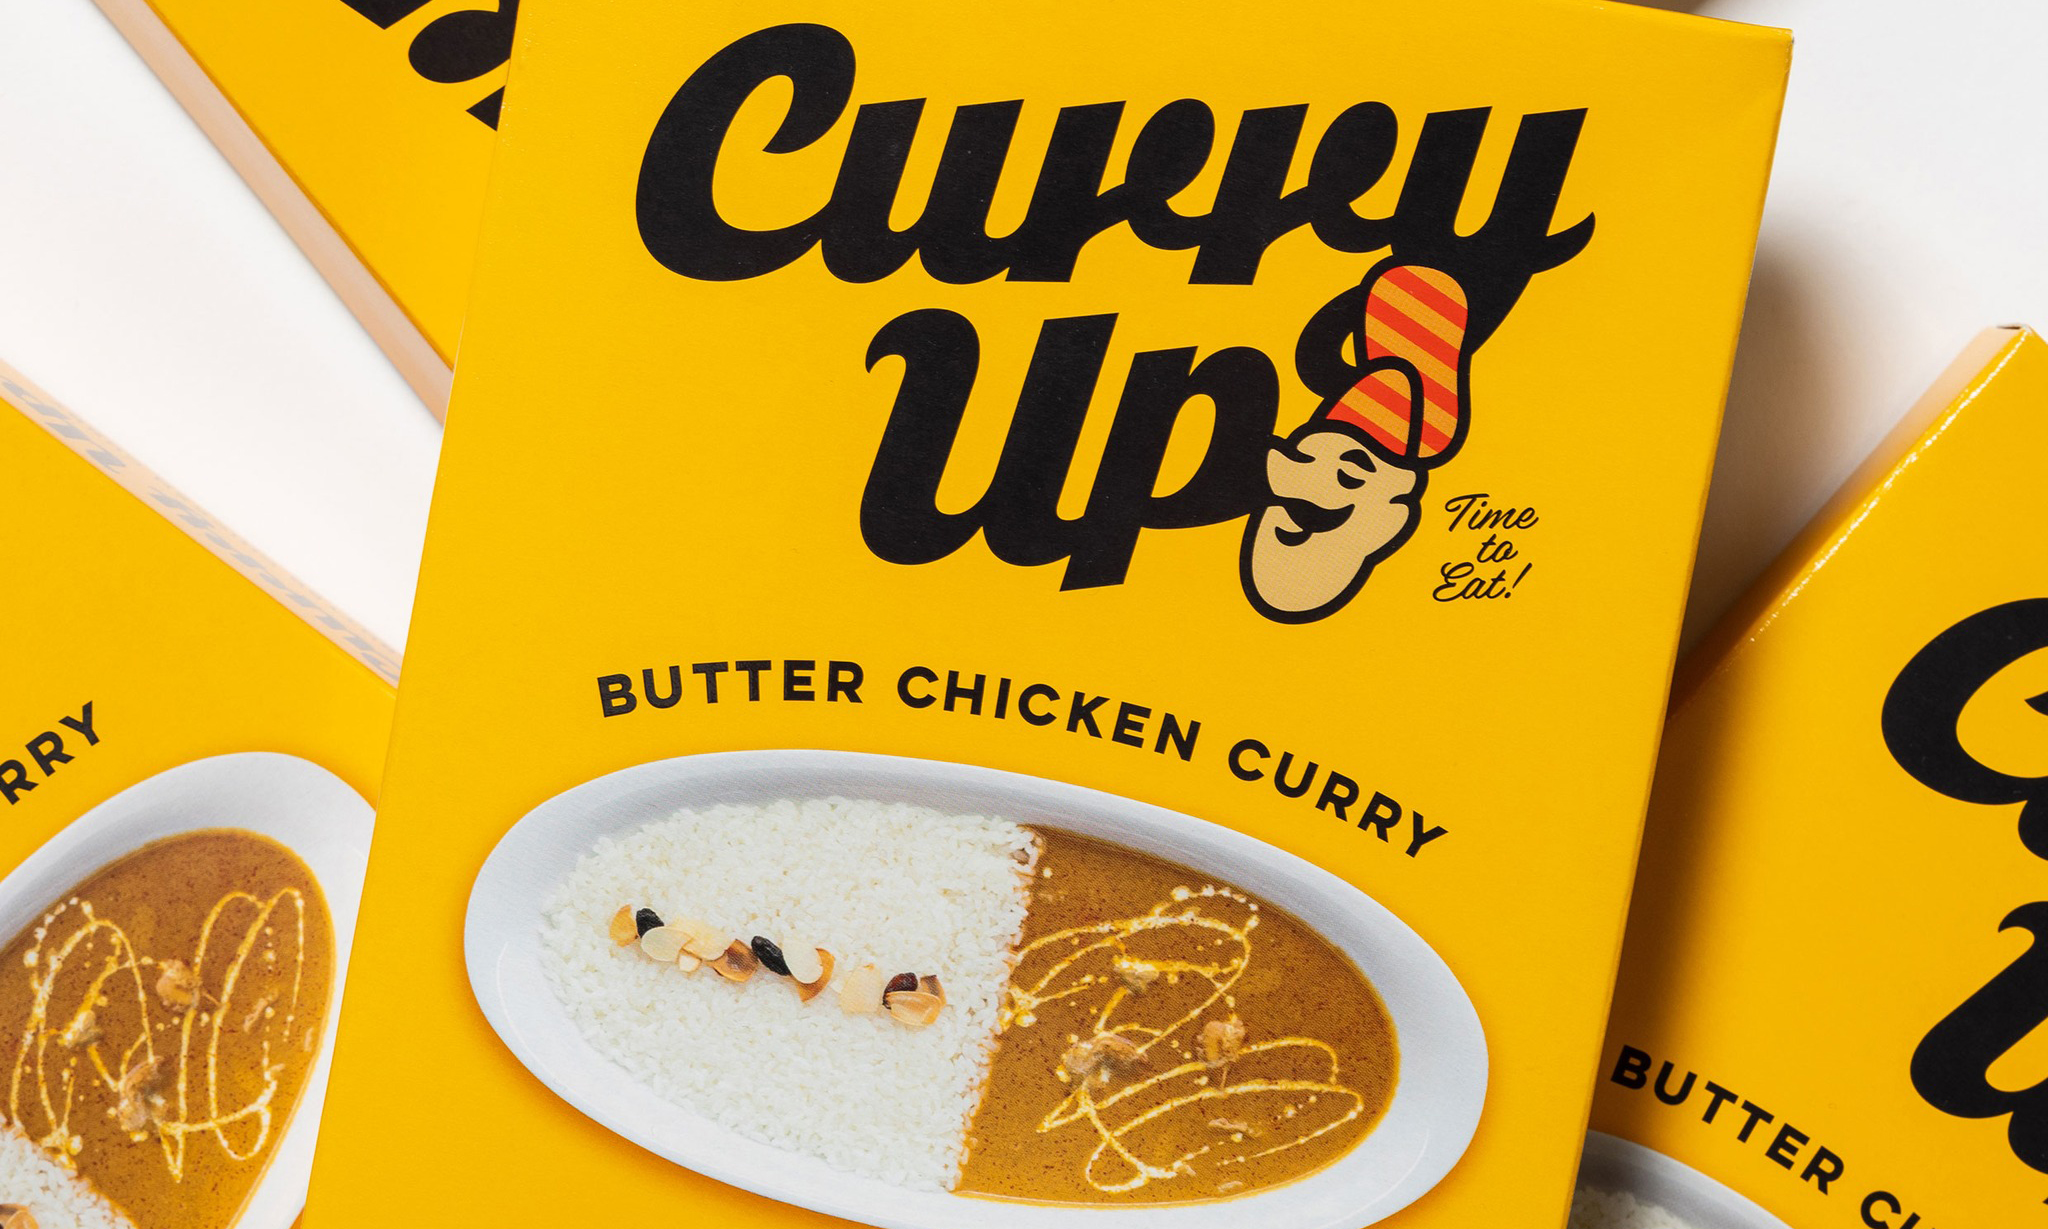 NIGO® 的咖喱品牌将发售蒸煮咖喱产品「CURRY UP BUTTER CHICKEN CURRY」